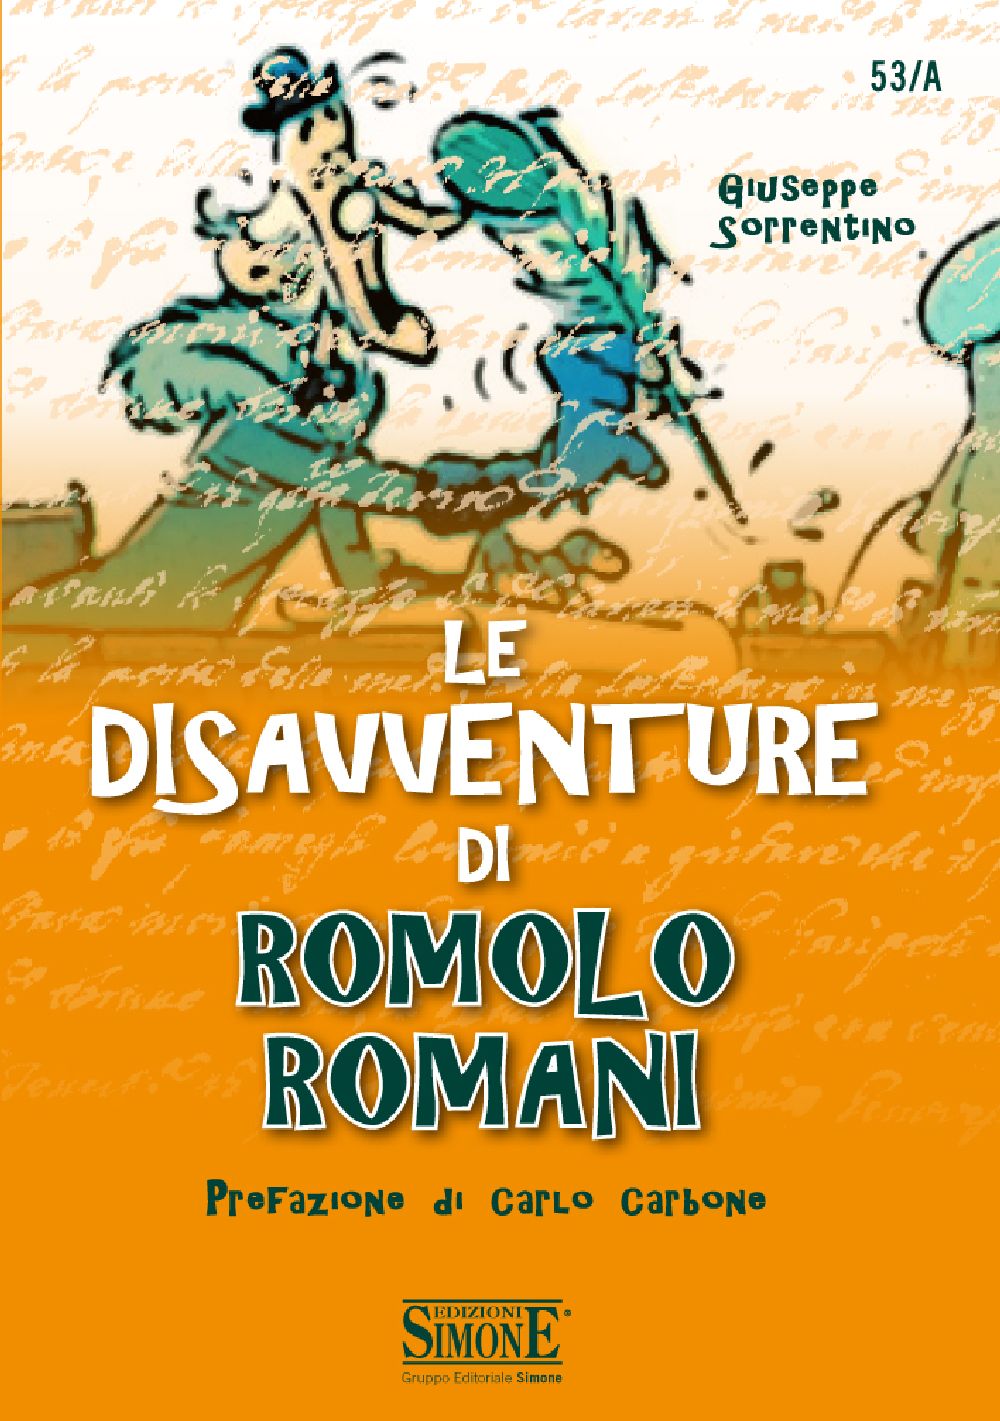 Le disavventure di Romolo Romani - 53/A